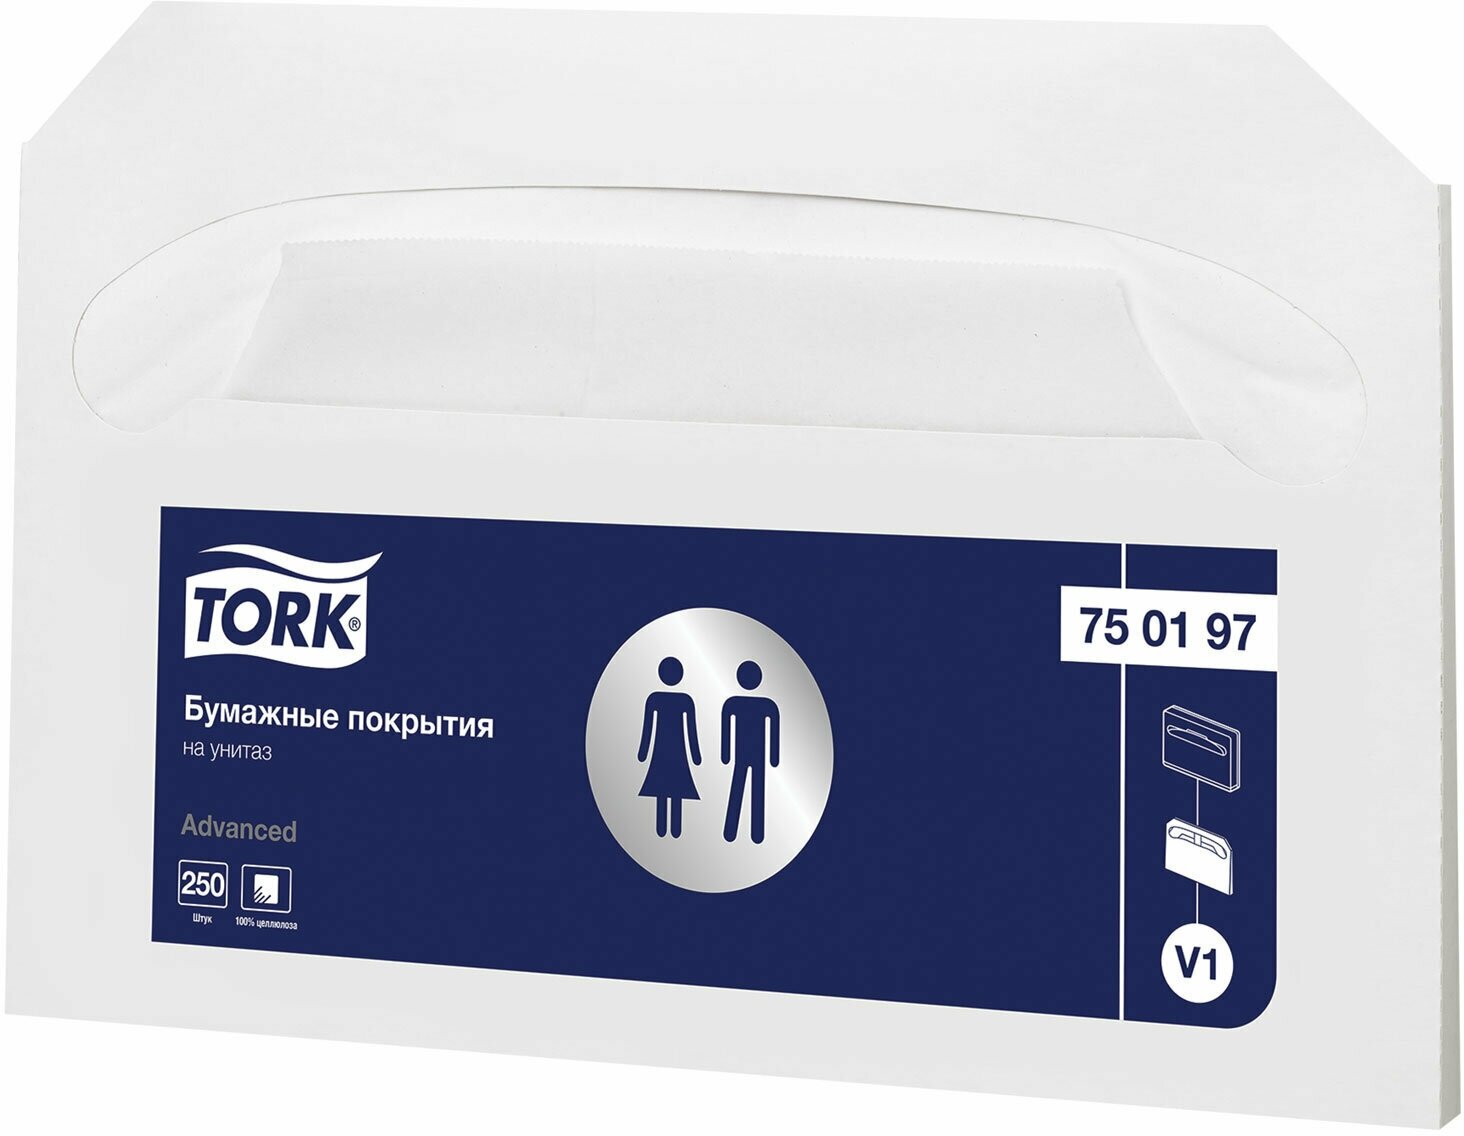 Покрытия на унитаз TORK (Система V1), 1/2 сложения, комплект 250 шт, 37х41 см, Advanced, белые, 750197